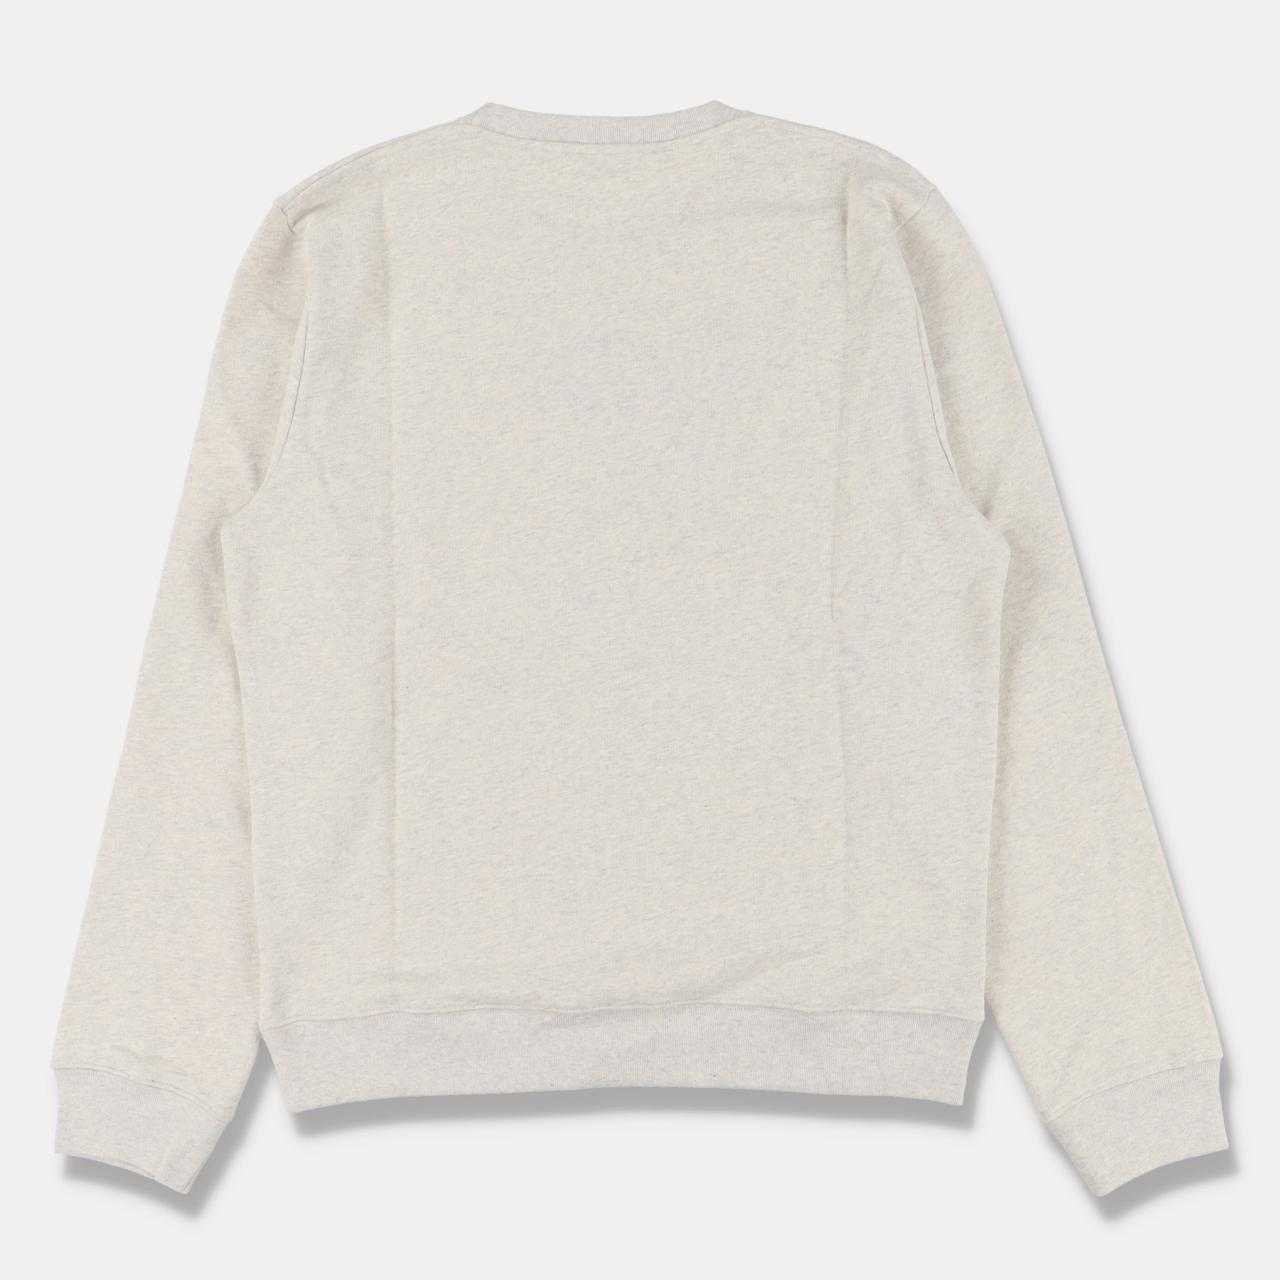 Product Image 4 - Loewe Grey Embroidered Logo Sweatshirt

-Size